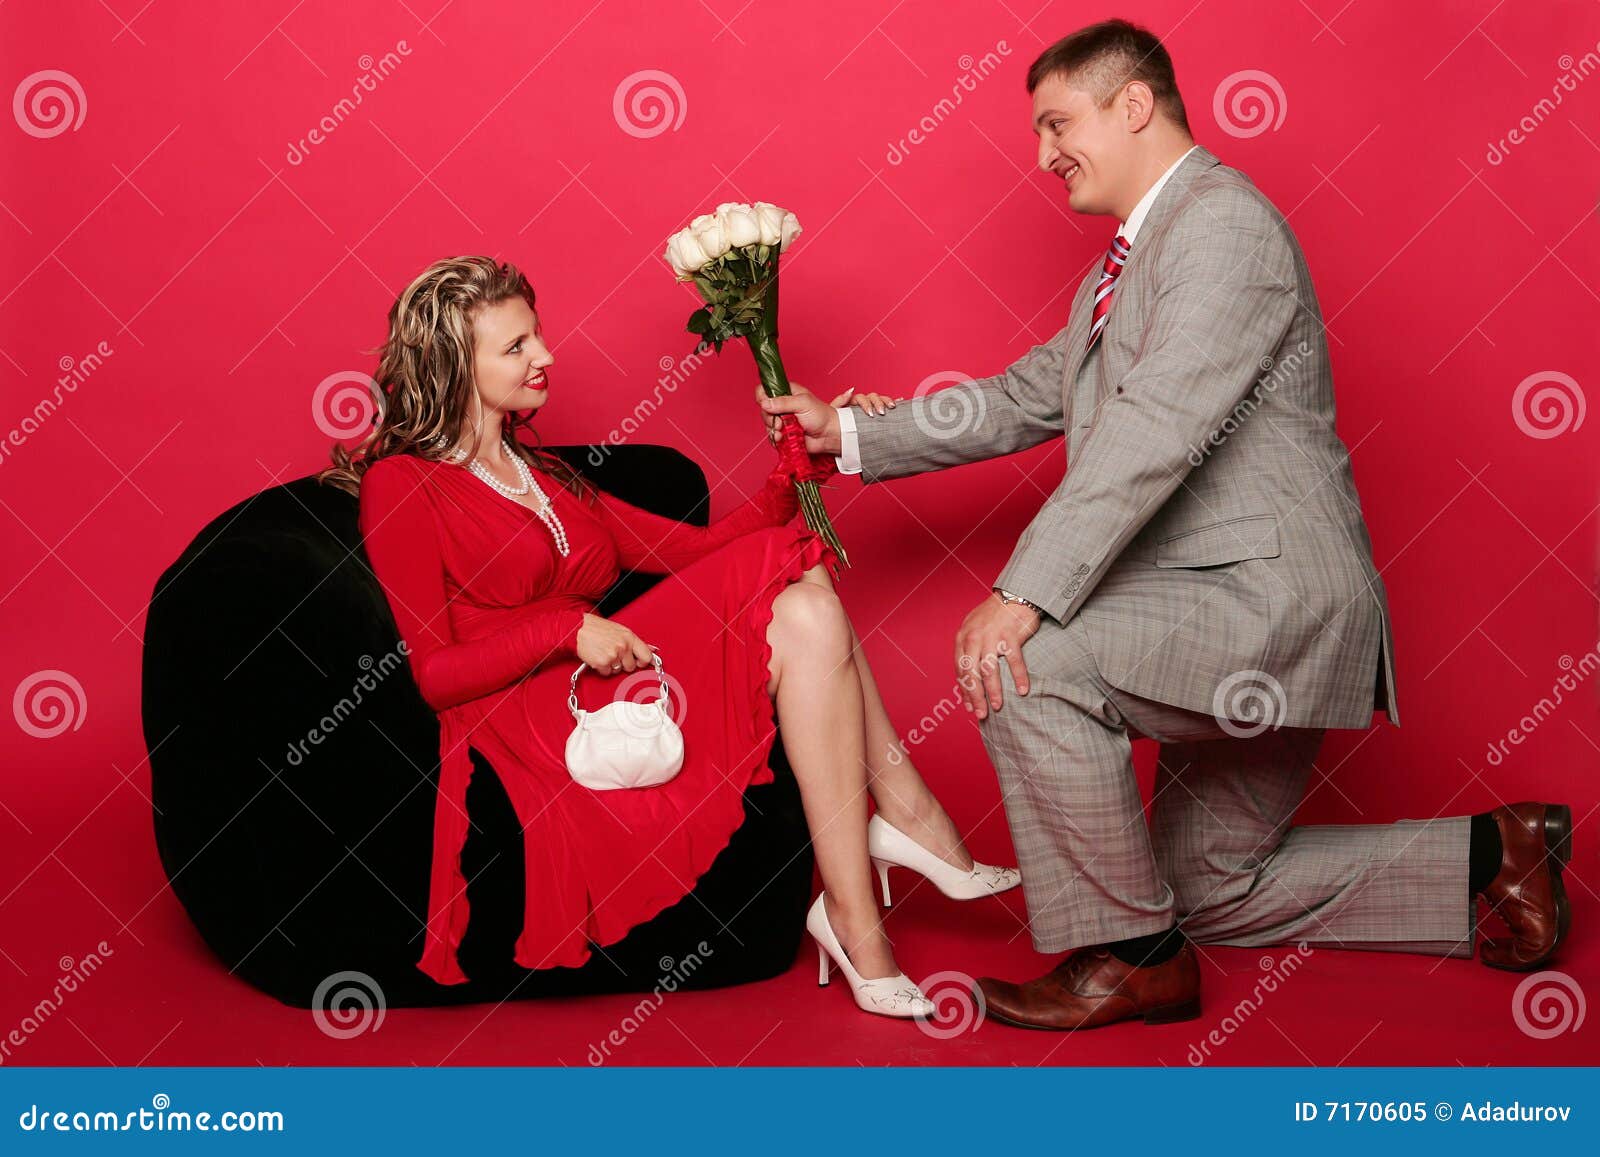 Муж жену стоя видео. Мужчина на коленях перед женщиной. Мужчина на коленях перед женщиной с цветами. Мужчина на коленях дарит цветы. Мужчина на одном колене с цветами.